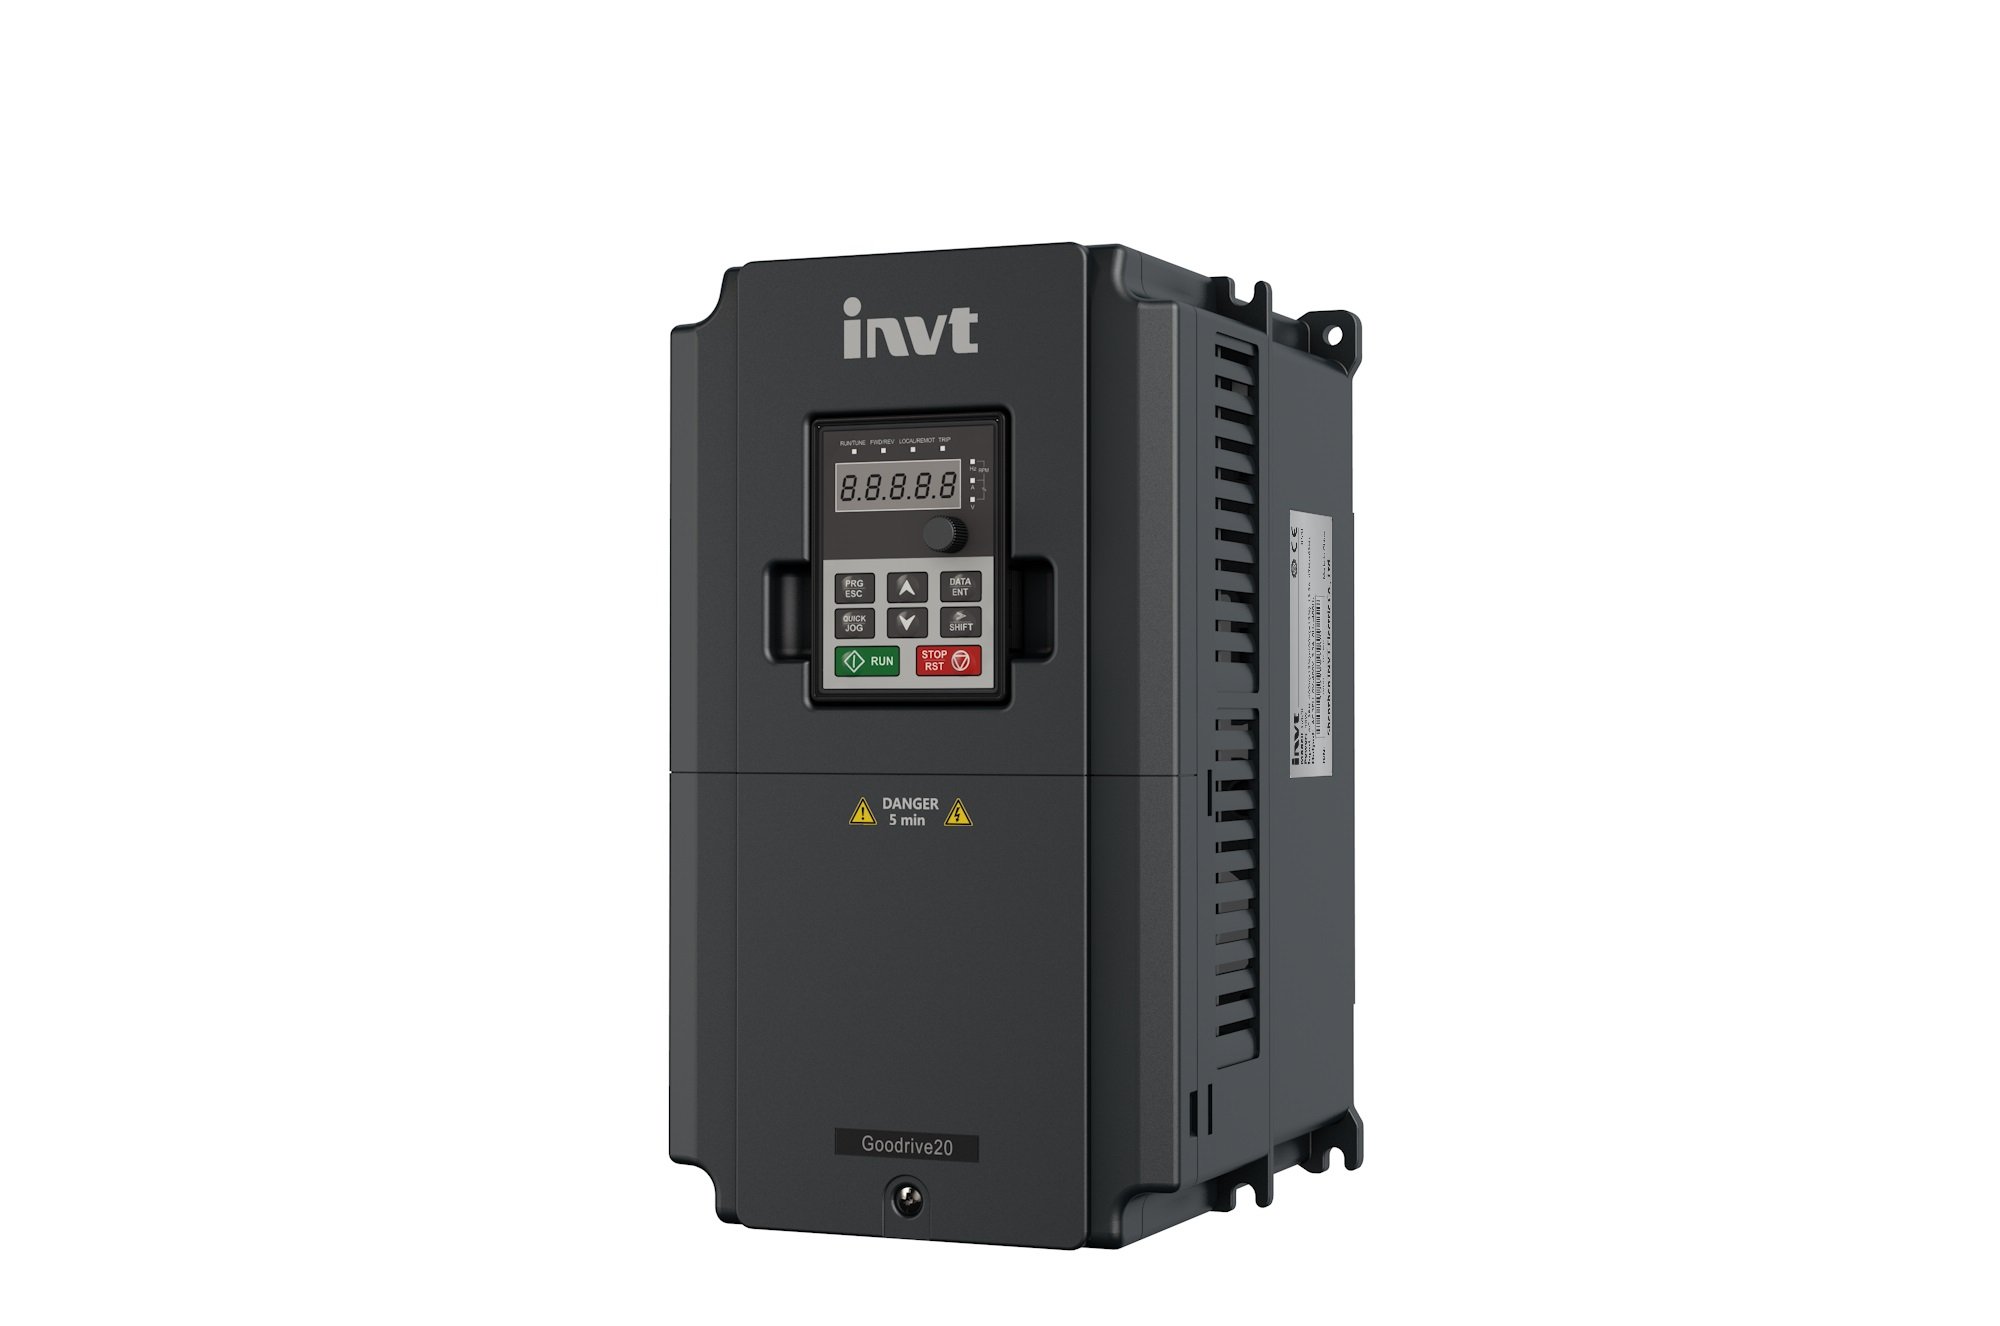 INVT Frequenzumrichter GD20, Vektorsteuerung, STO Funktion, IP20